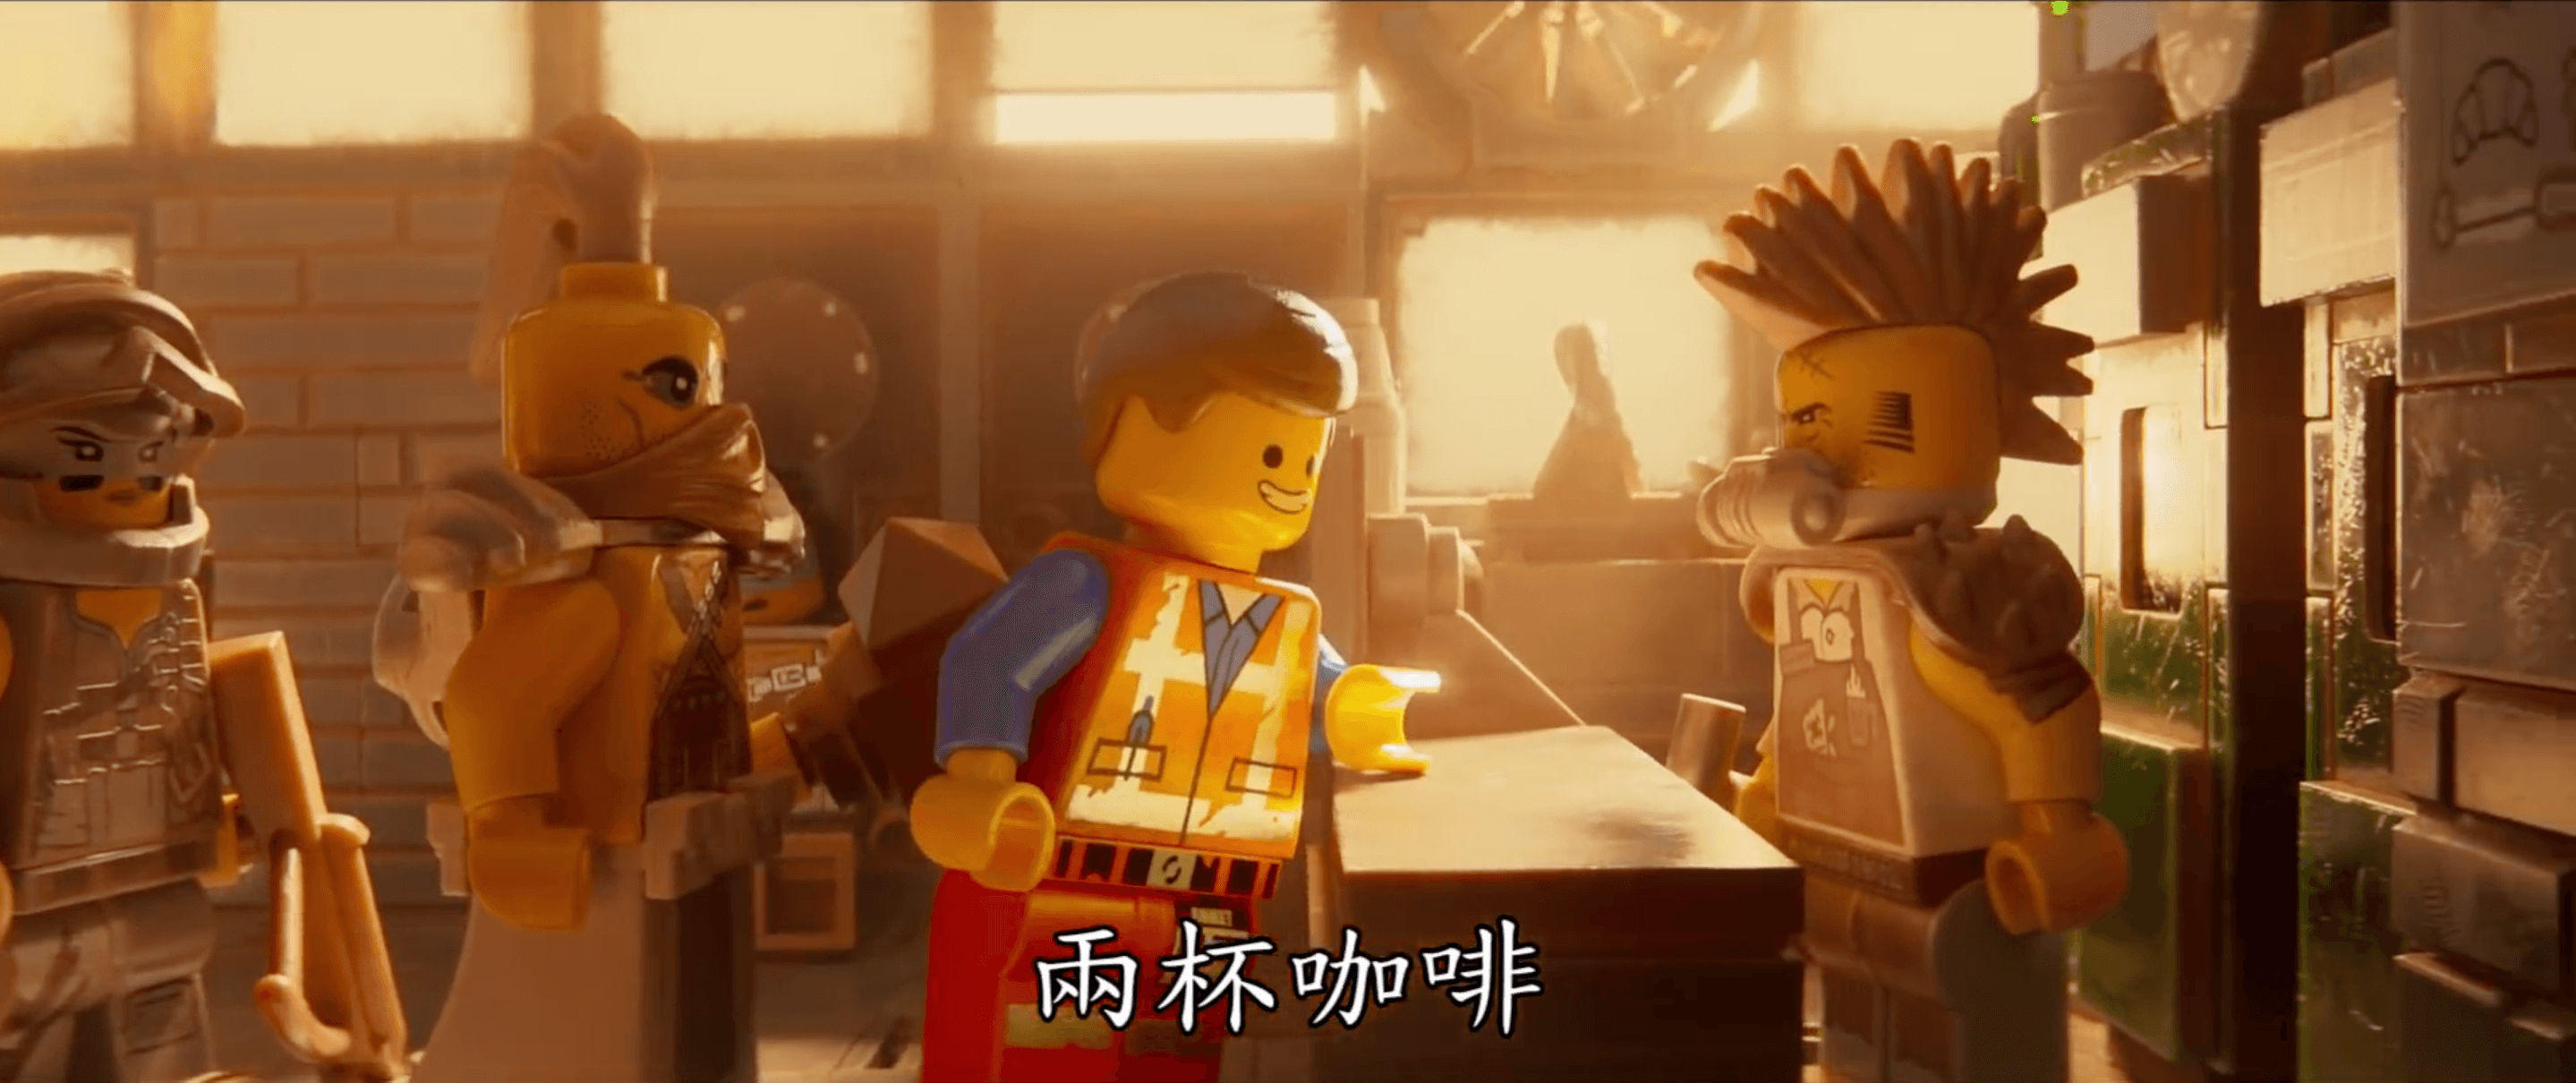 【國賓長春】樂高玩電影2，無雷/有雷心得 The Lego Movie 2